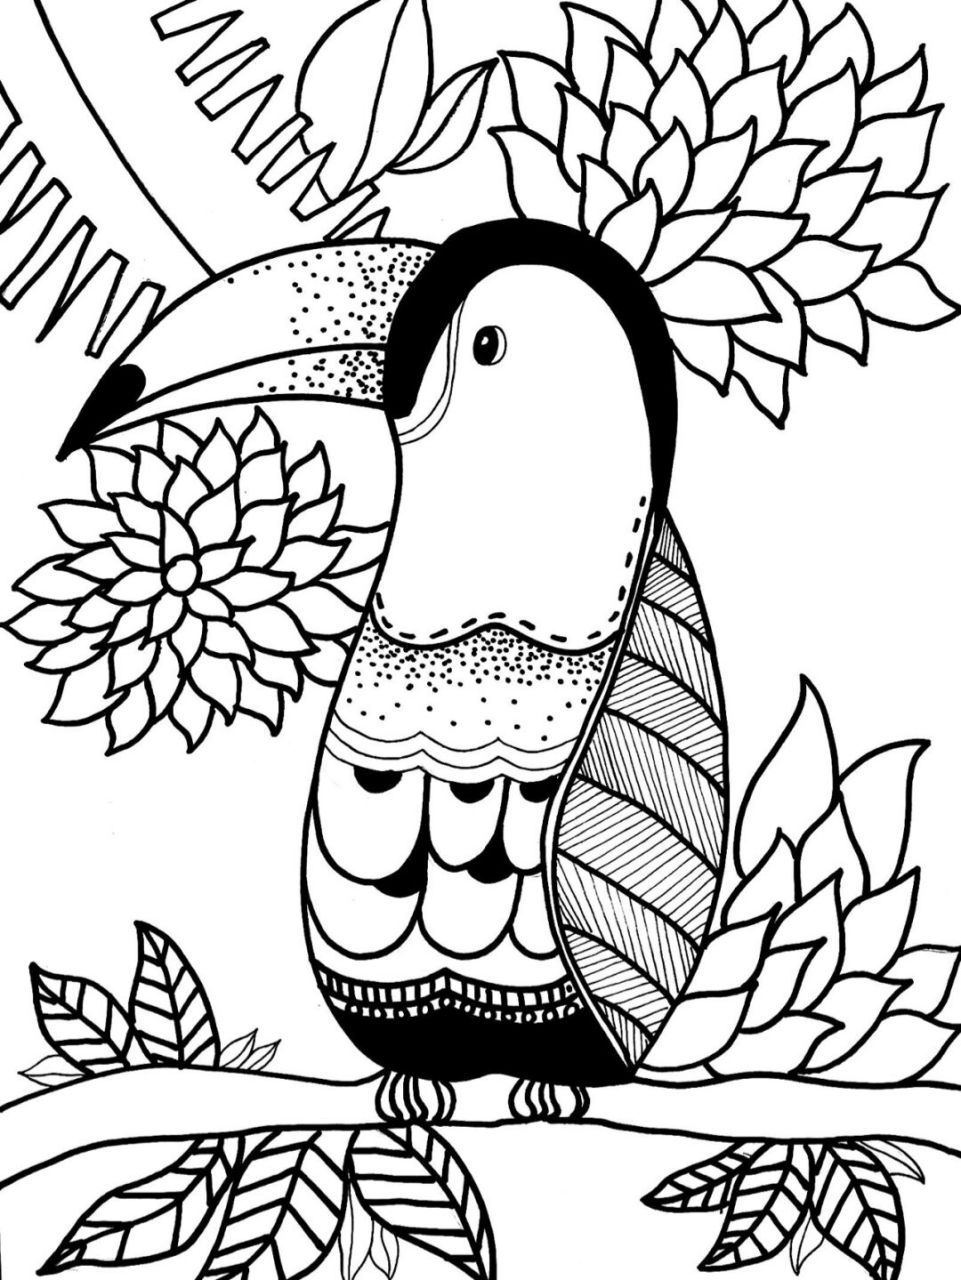 鹦鹉创意线描画图片